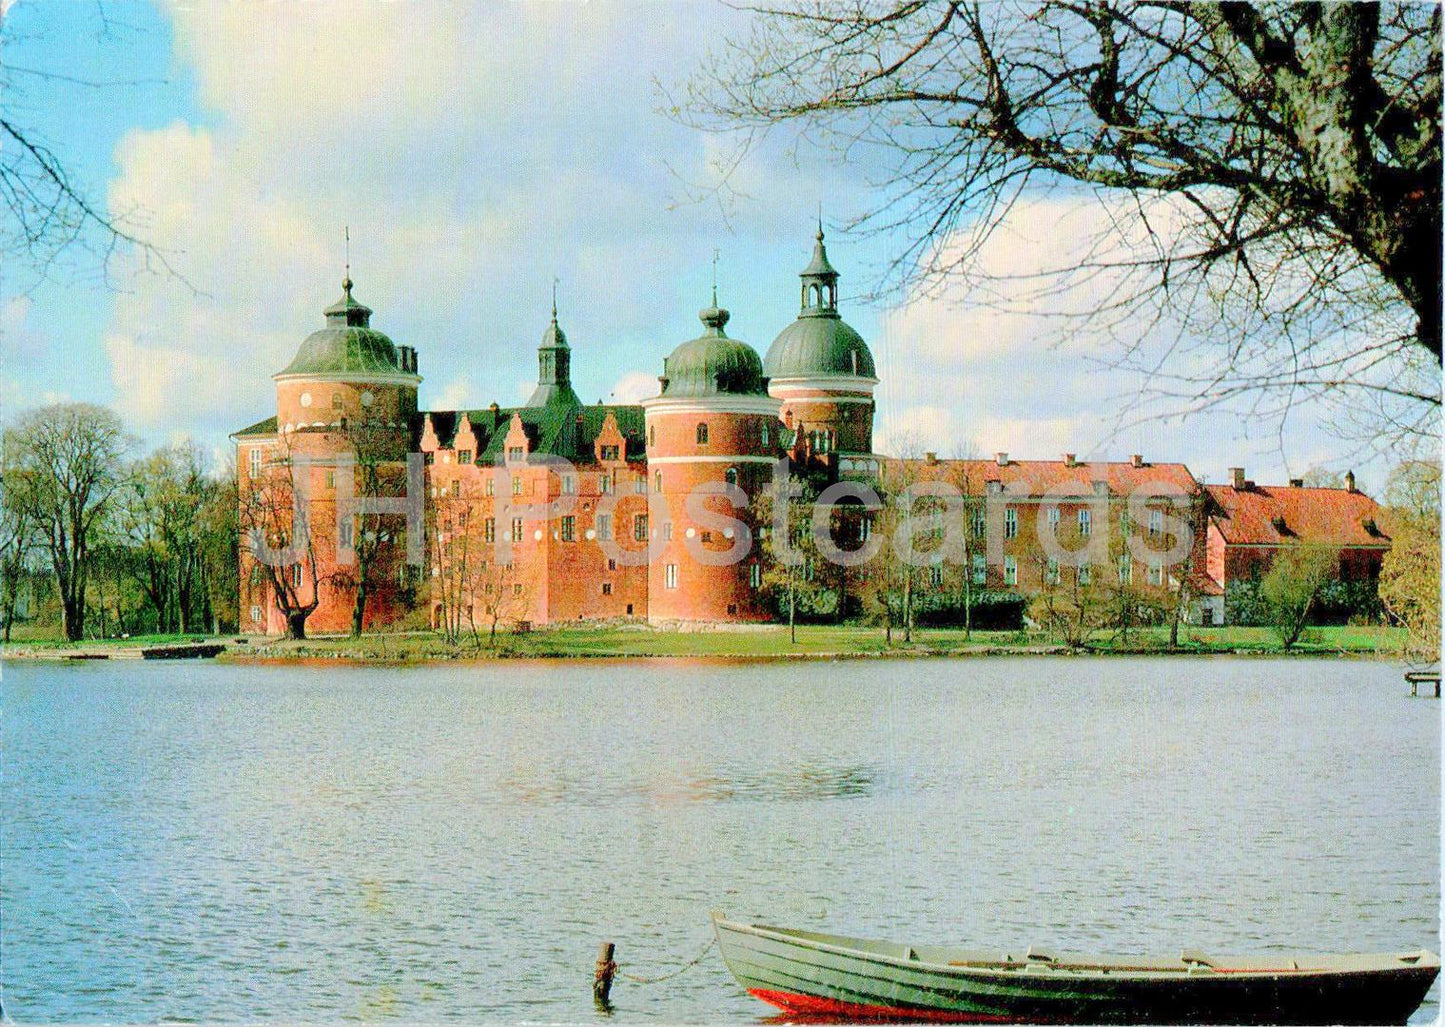 Mariefred - Gripsholms Slott - Gripsholm - castle - boat - 1994 - Sweden - used